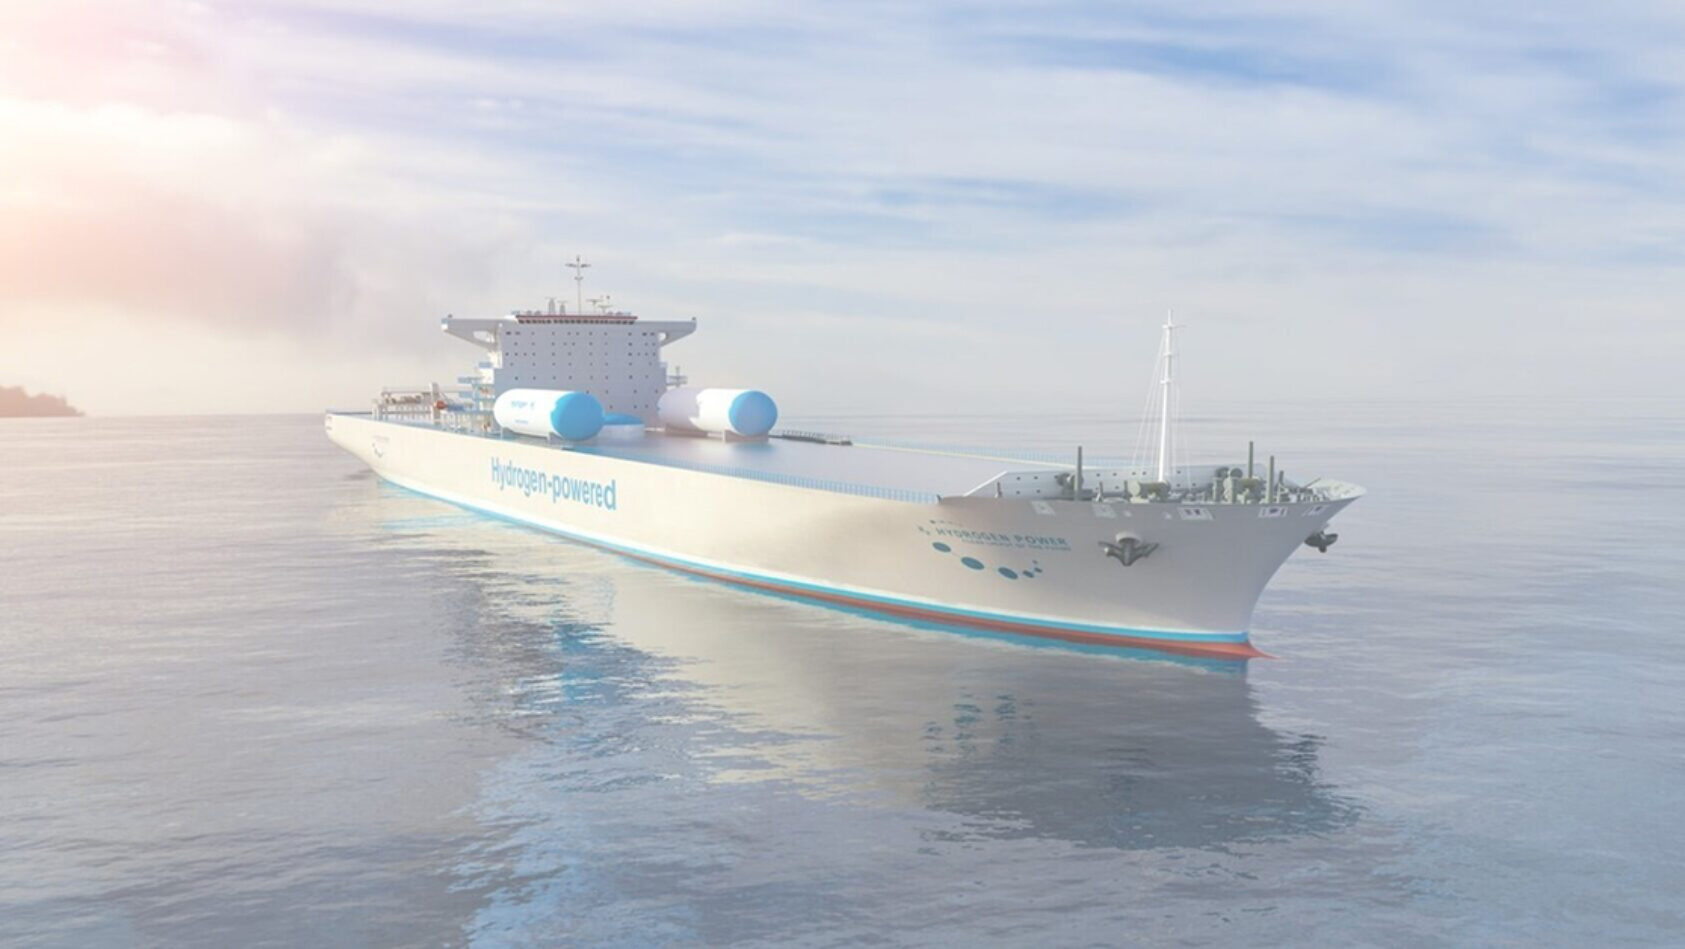 shutterstock.com, NORCE, med partnere, skal bidra til at det blir billigere og lettere å velge hydrogen i maritim transport., One Slider Hy Value båtbilde, , 